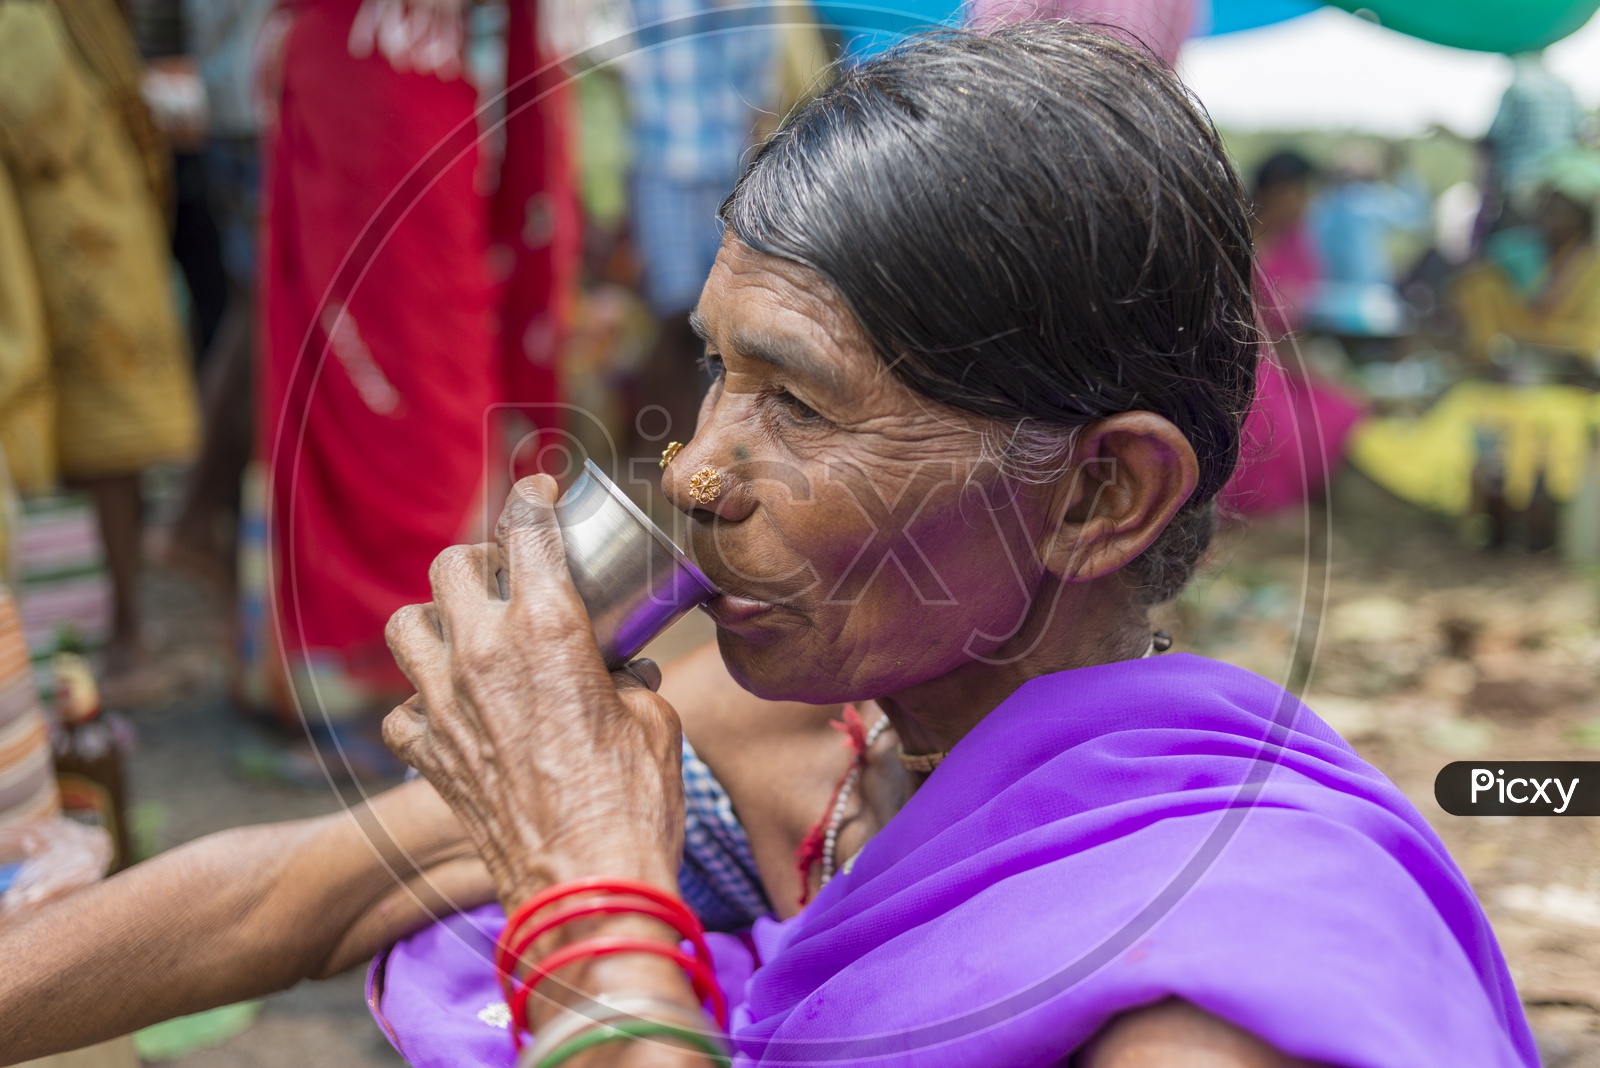 Tribal Women in Local Tribal People Market